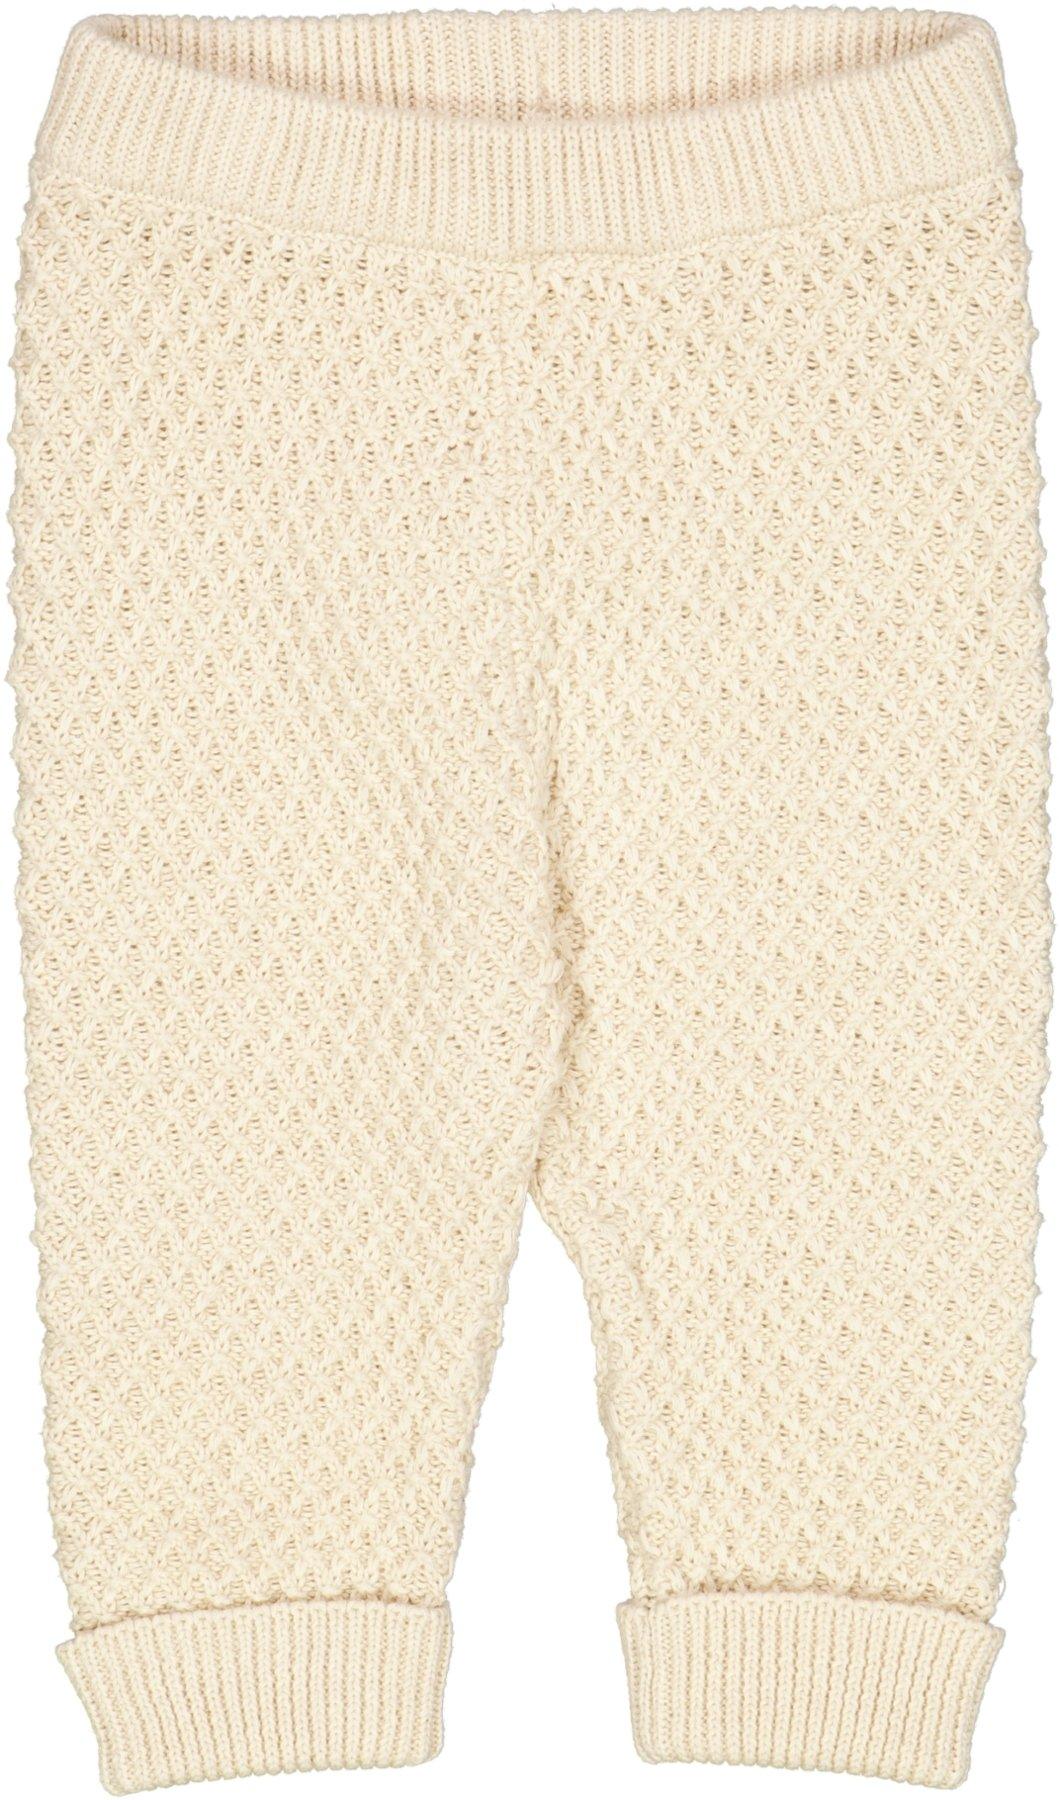 Knit Trousers Lio - Little moon